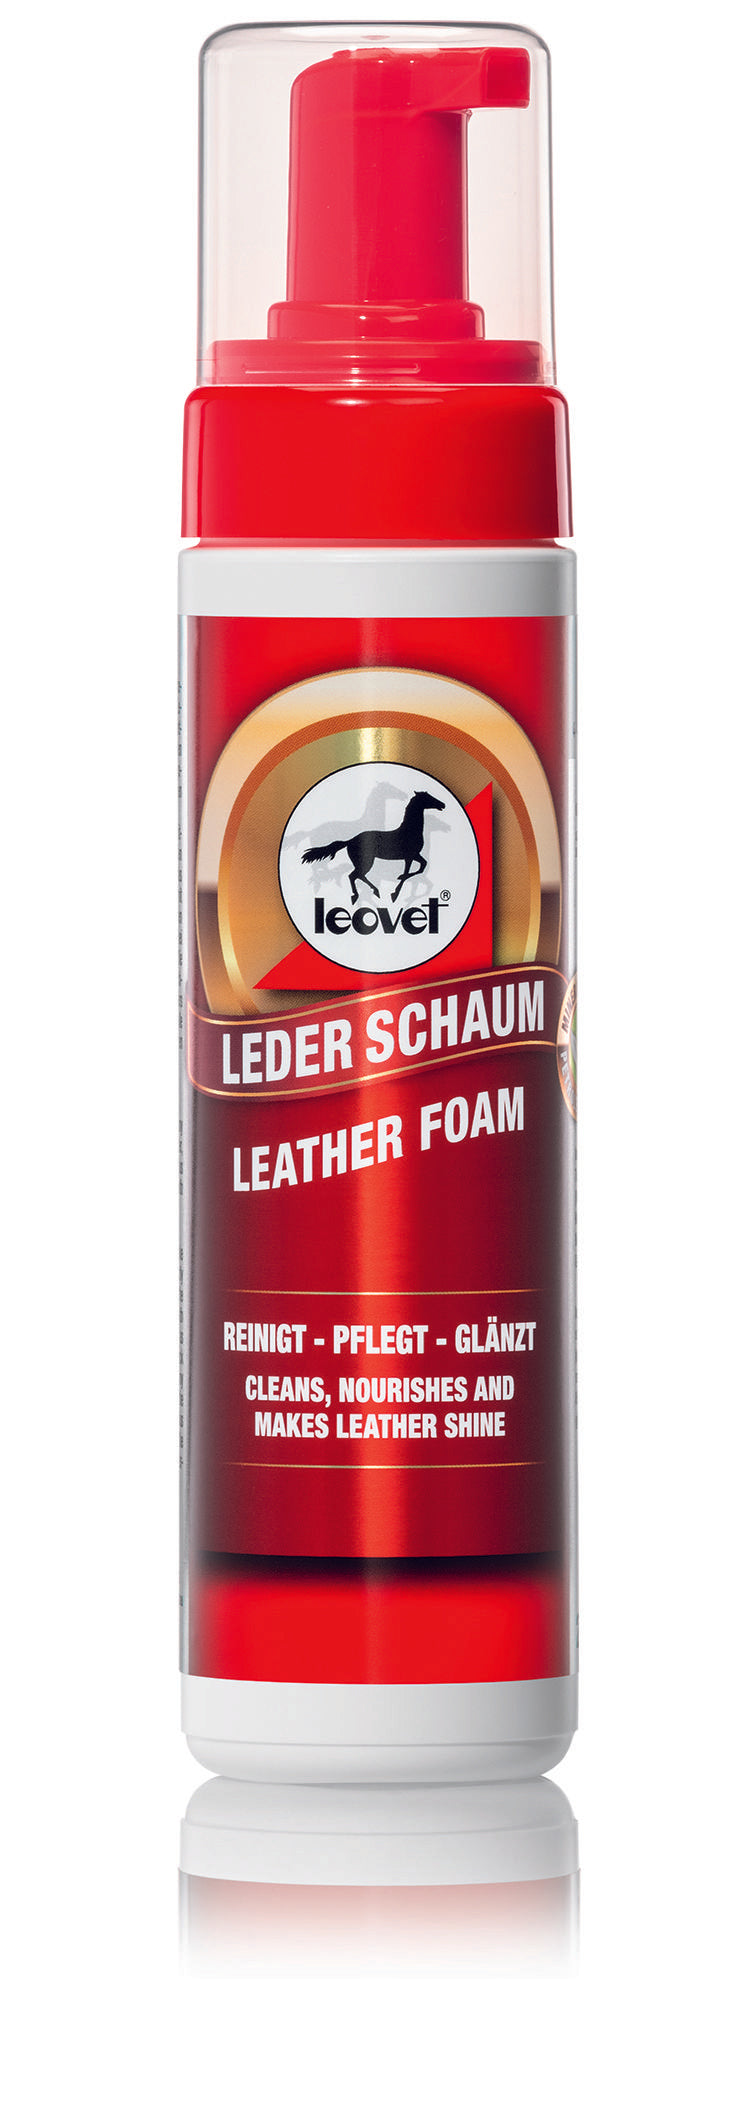 Leovet Leather Foam